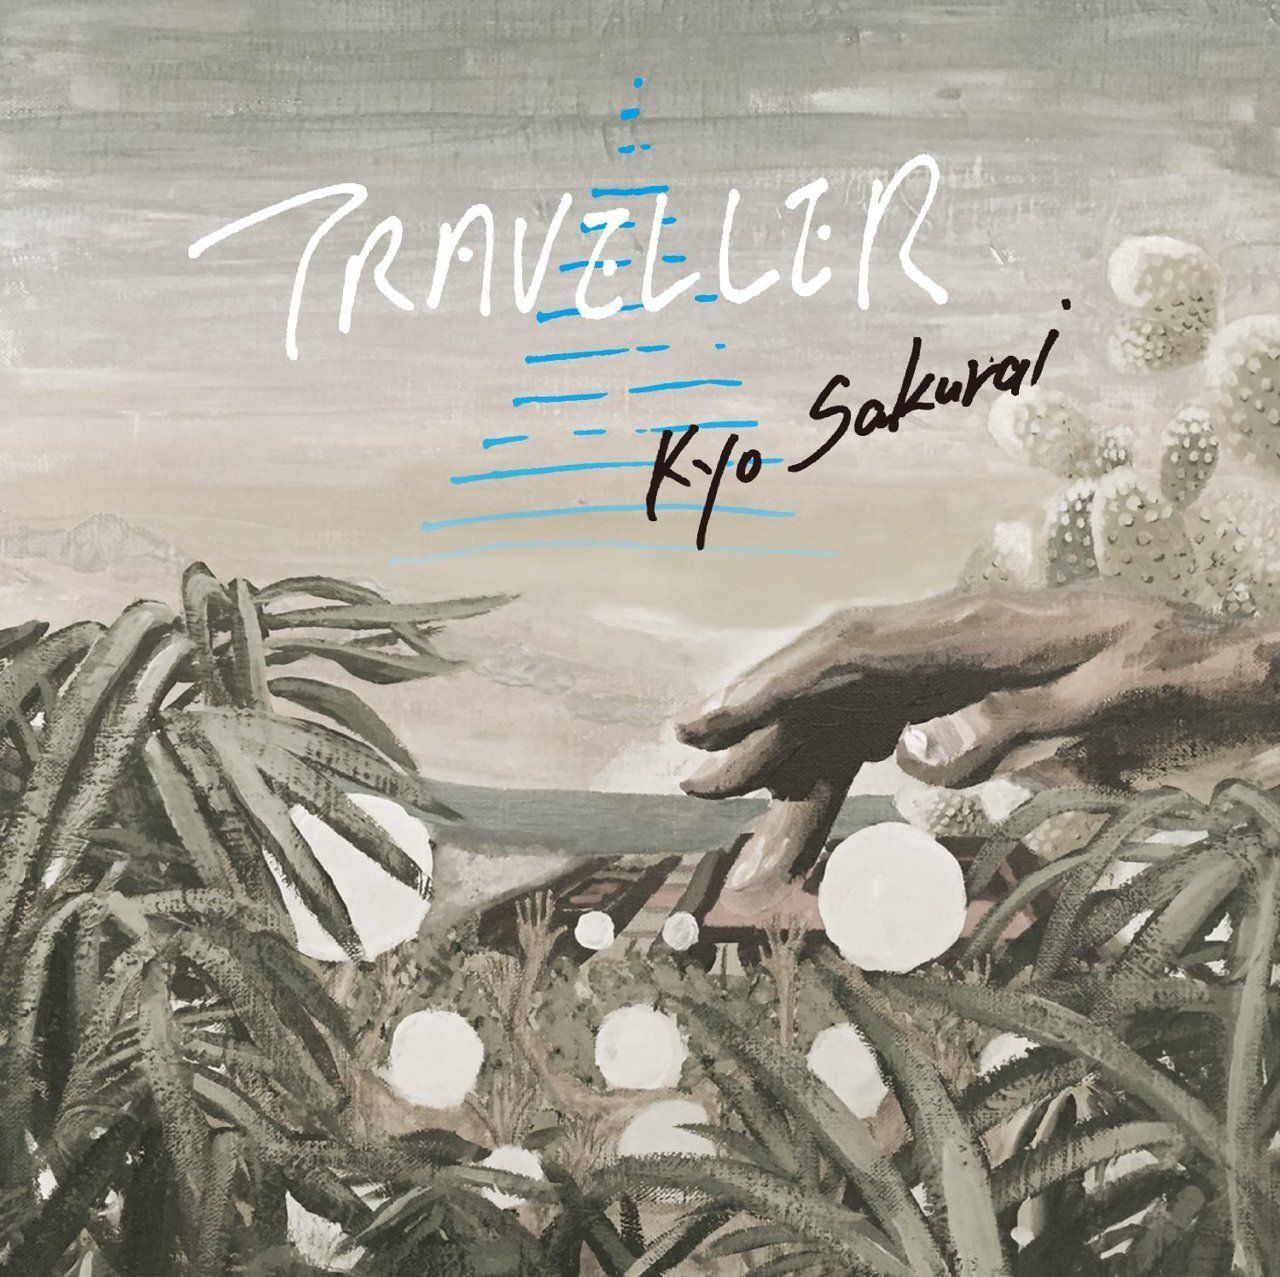 Kyo Sakurai "Traveler" Release Party